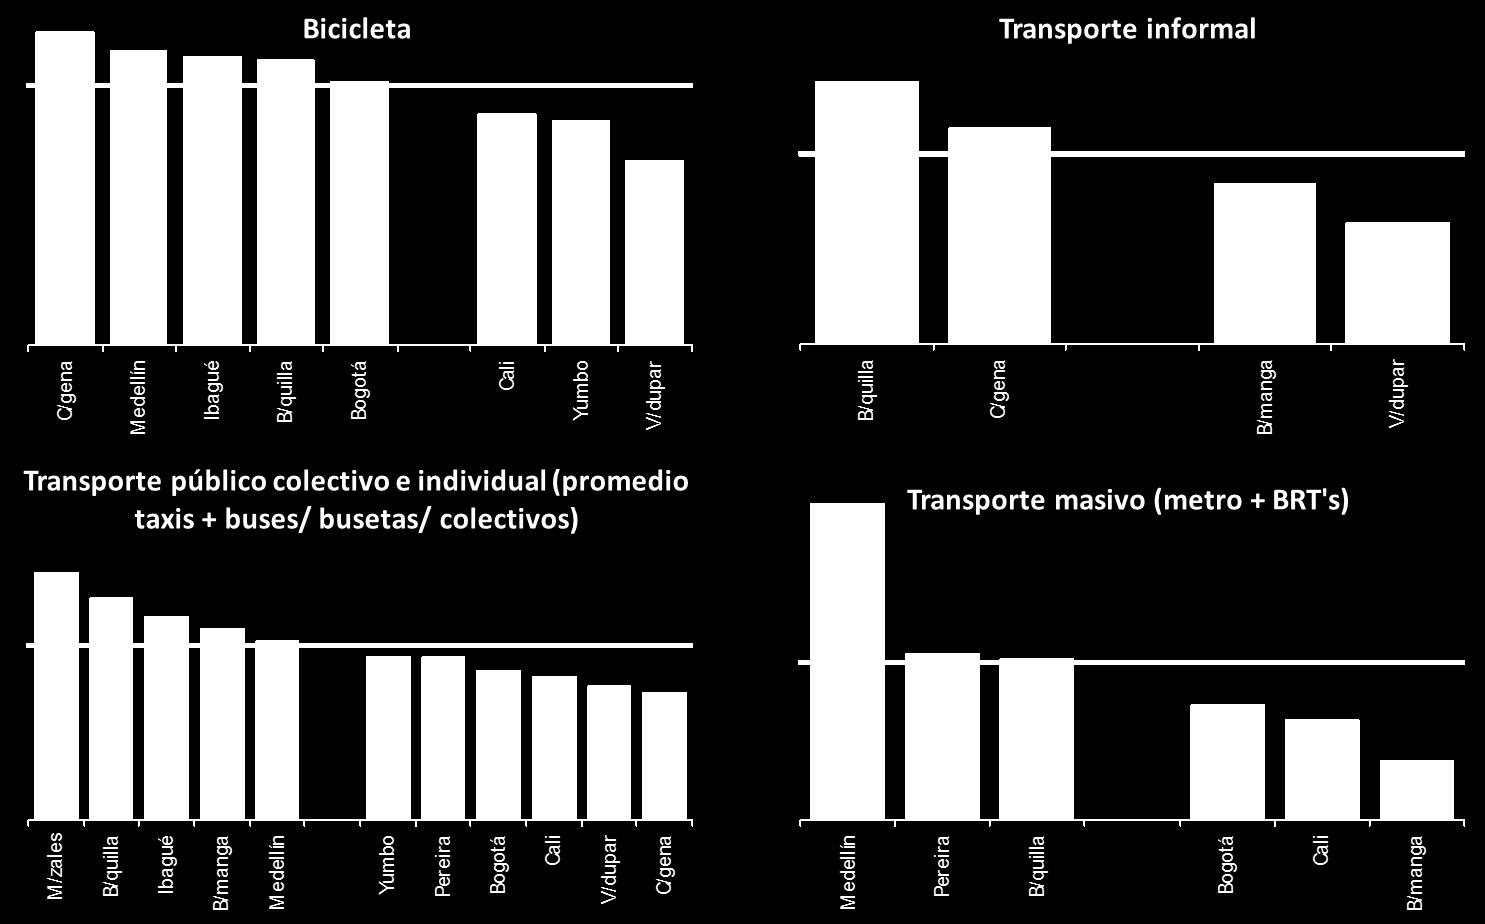 Satisfechos con el medio de transporte que usan más frecuentemente (2013) Base: Usuarios de